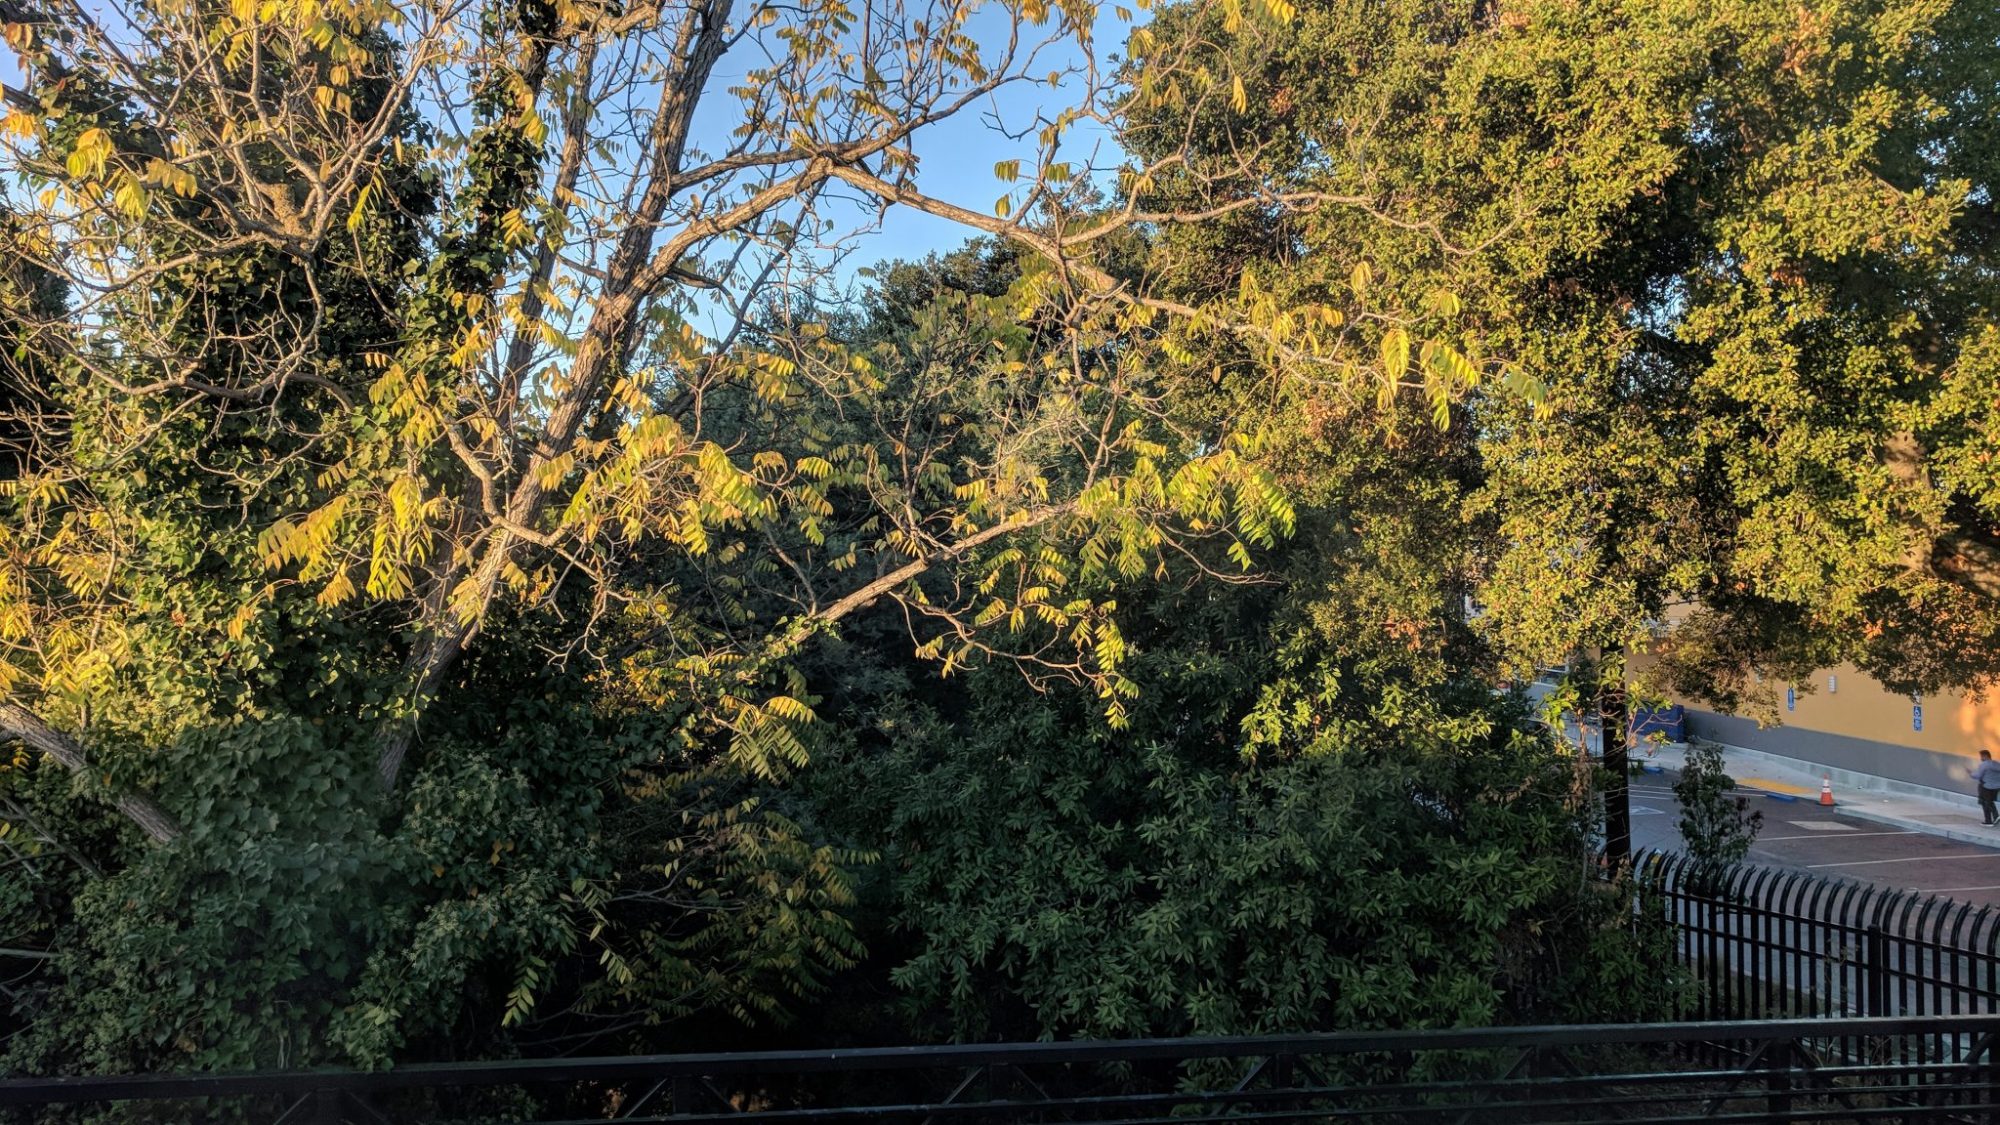 Photo of trees at San Mateo Caltrain station